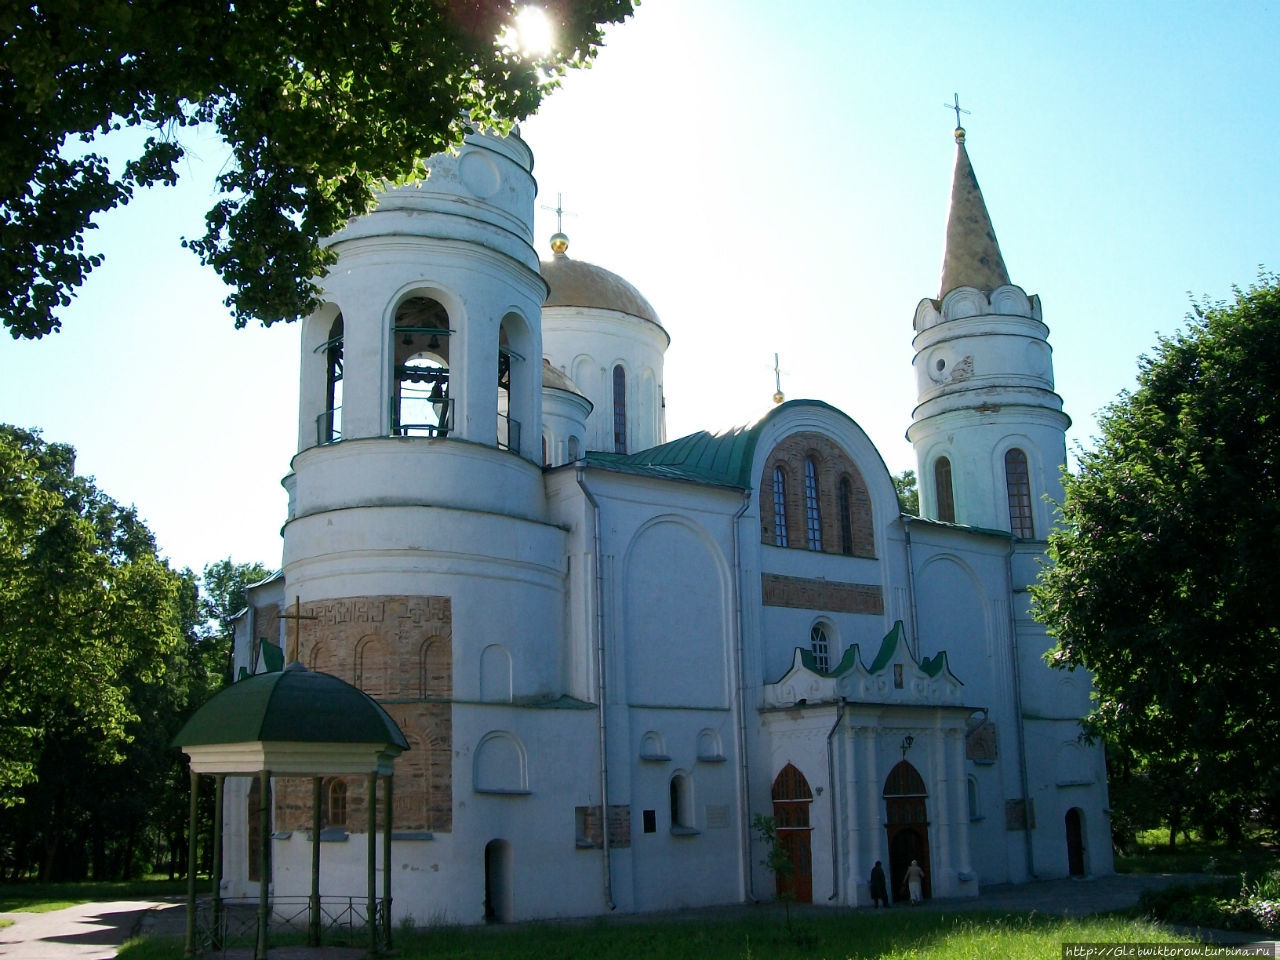 Спасо-Преображенский собор / Spaso-Preobrazhensky Cathedral